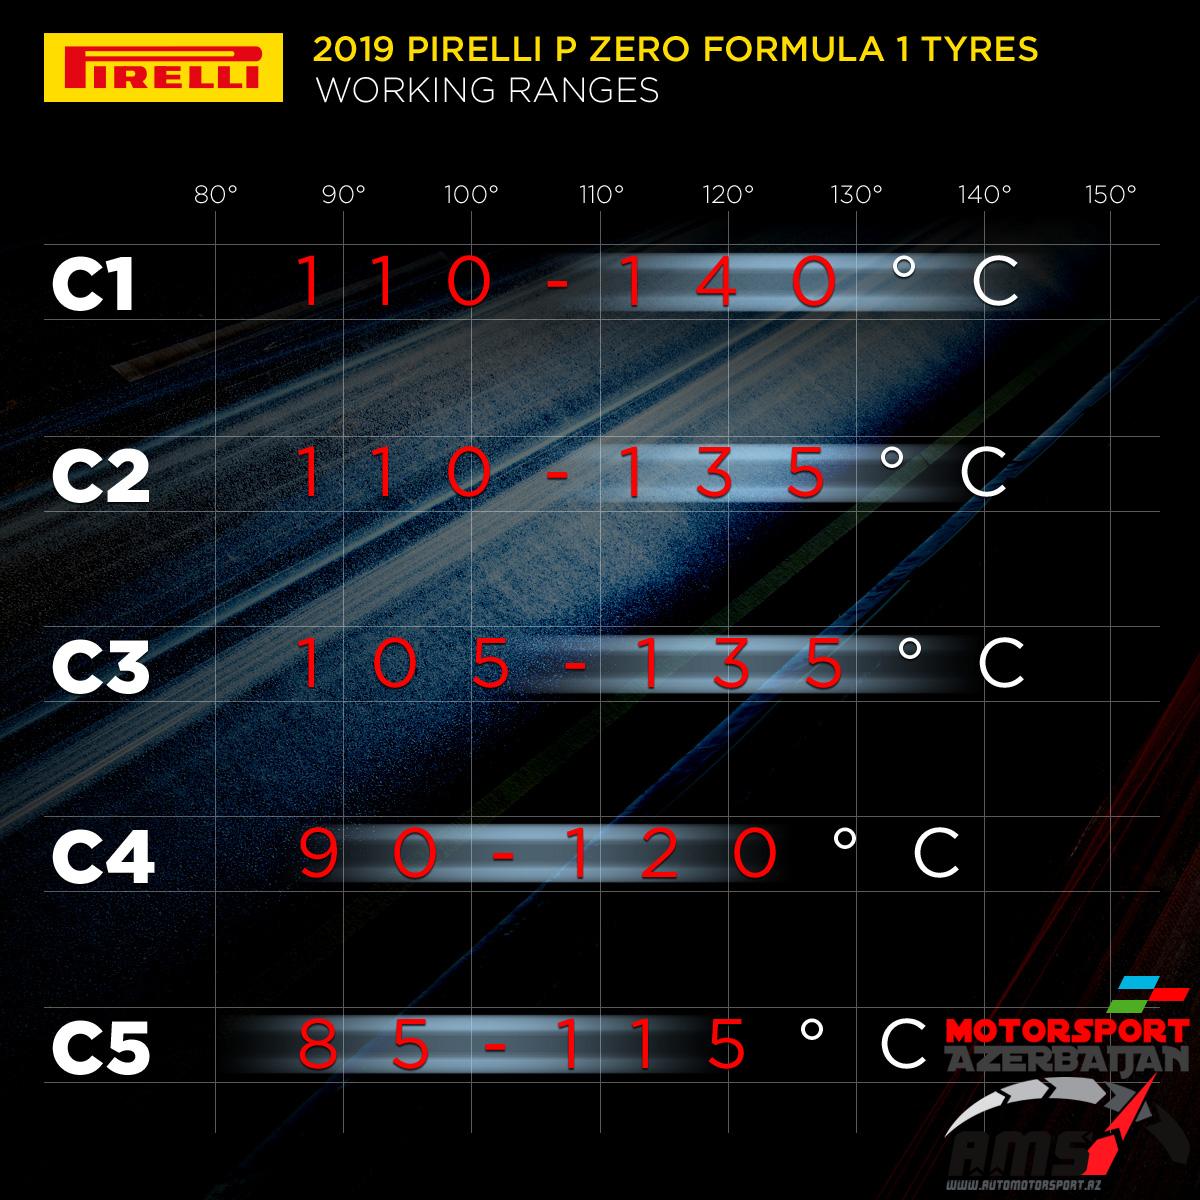 Pirelli working ranges